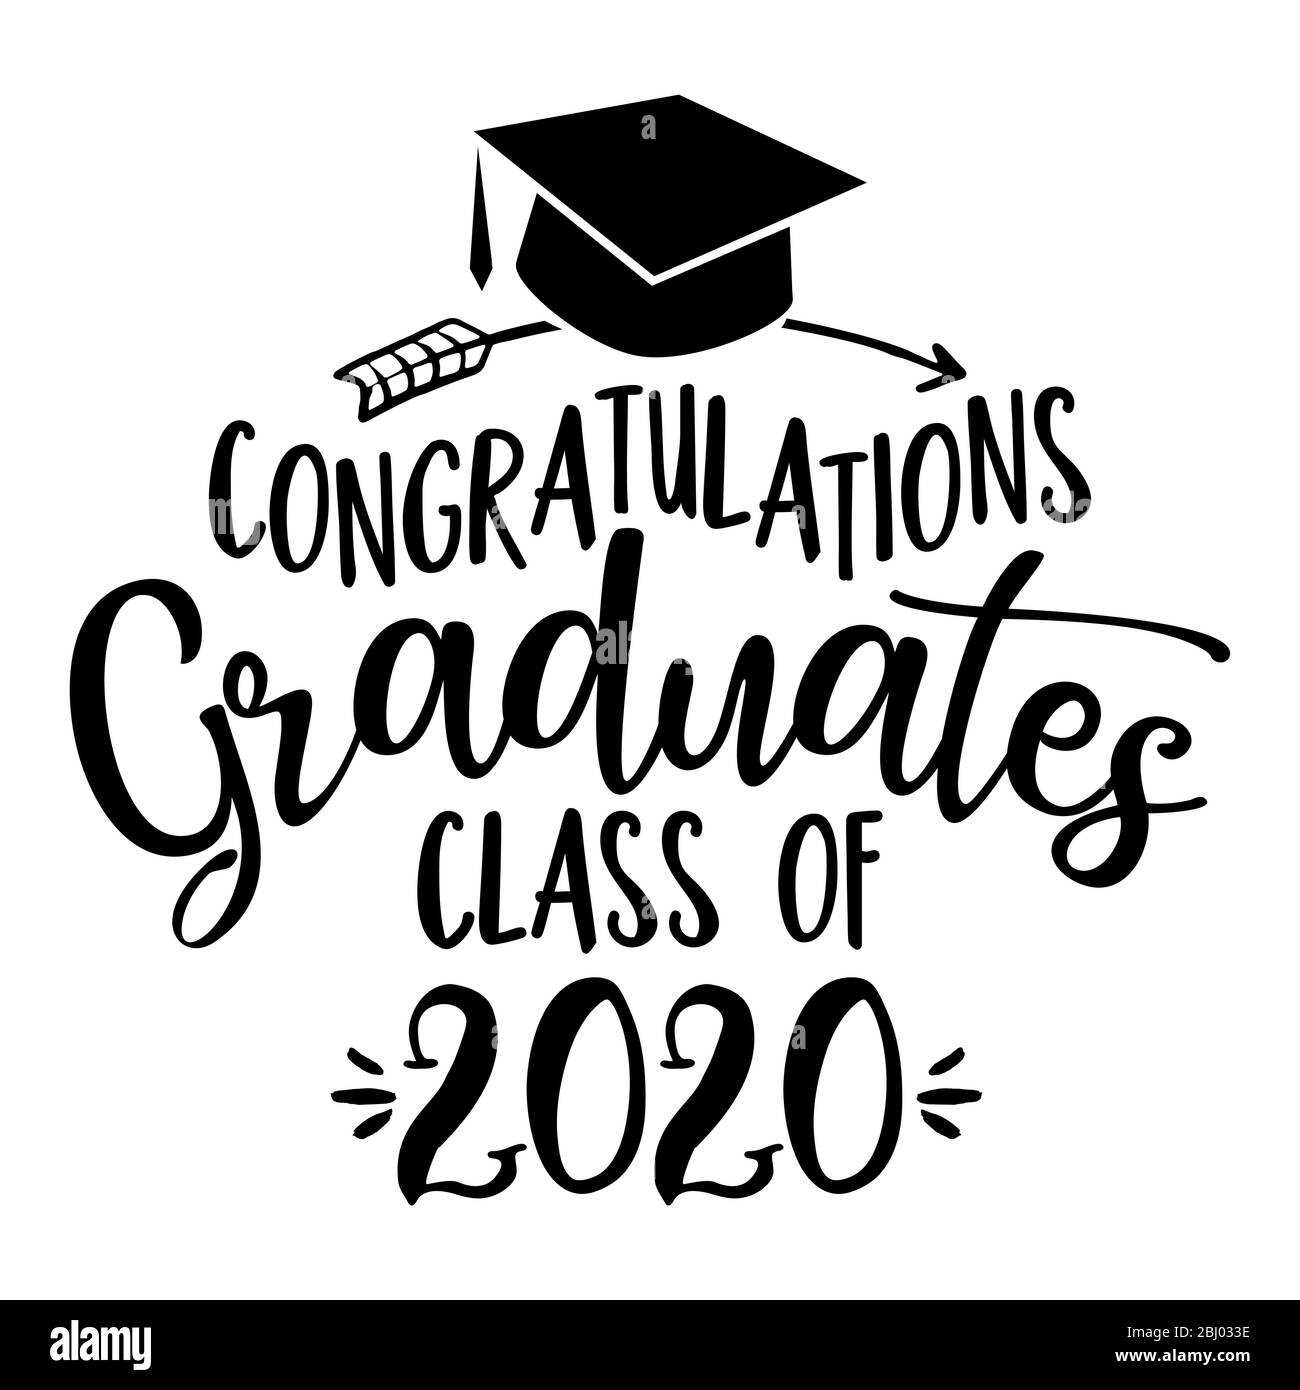 Herzlichen Glückwunsch Absolventen Klasse 2020 - Typografie. blck Text isoliert weißen Hintergrund. Vektorgrafik einer Abschlussklasse von 2020. Grafik Stock Vektor